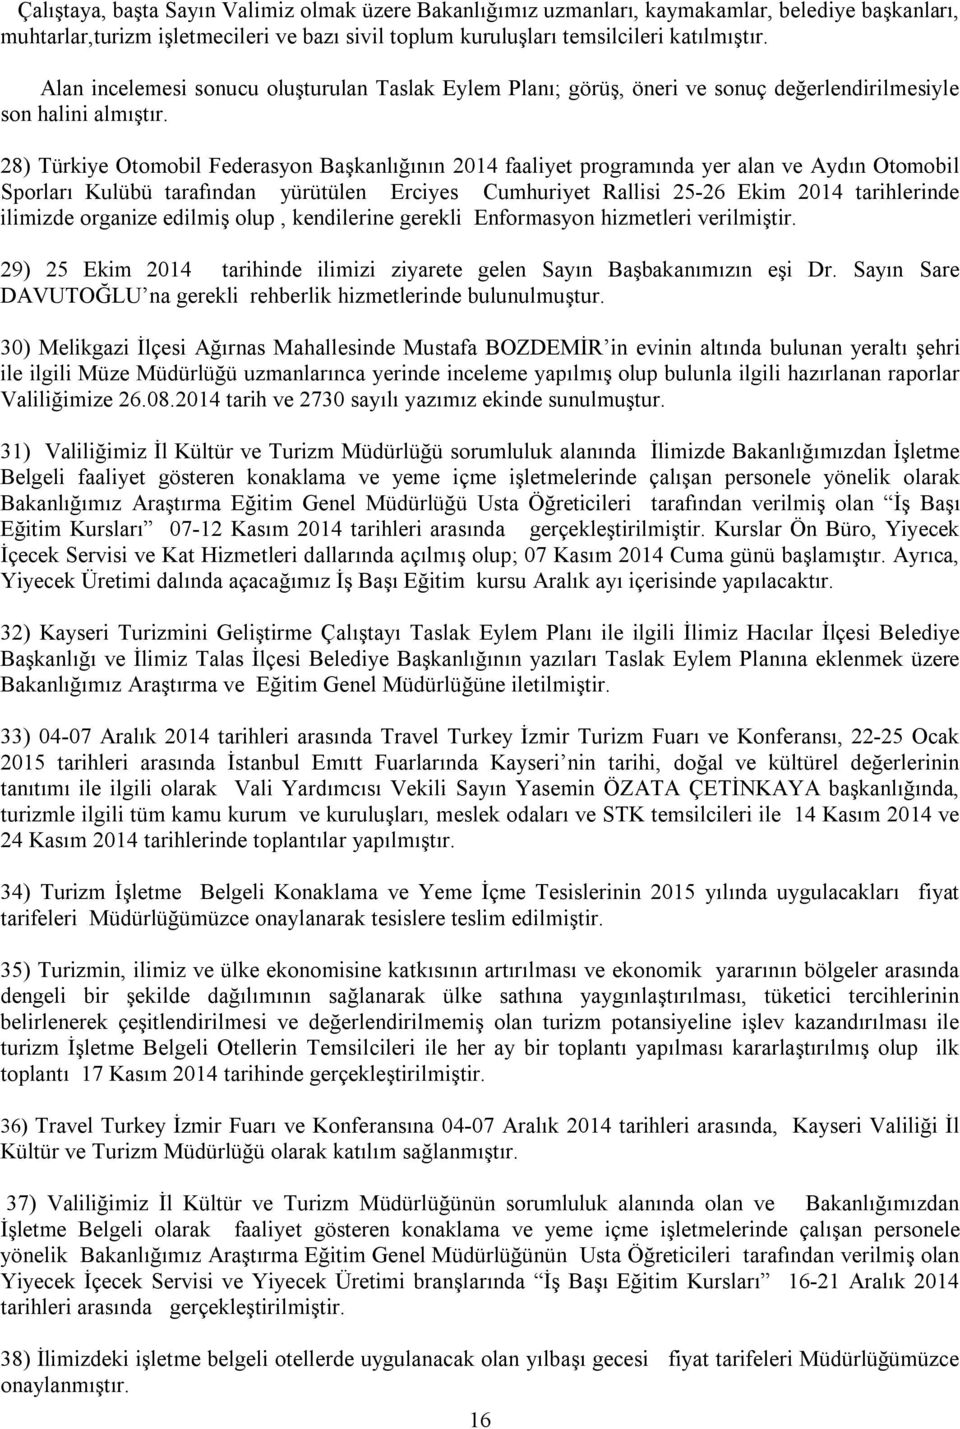 28) Türkiye Otomobil Federasyon Başkanlığının 2014 faaliyet programında yer alan ve Aydın Otomobil Sporları Kulübü tarafından yürütülen Erciyes Cumhuriyet Rallisi 25-26 Ekim 2014 tarihlerinde